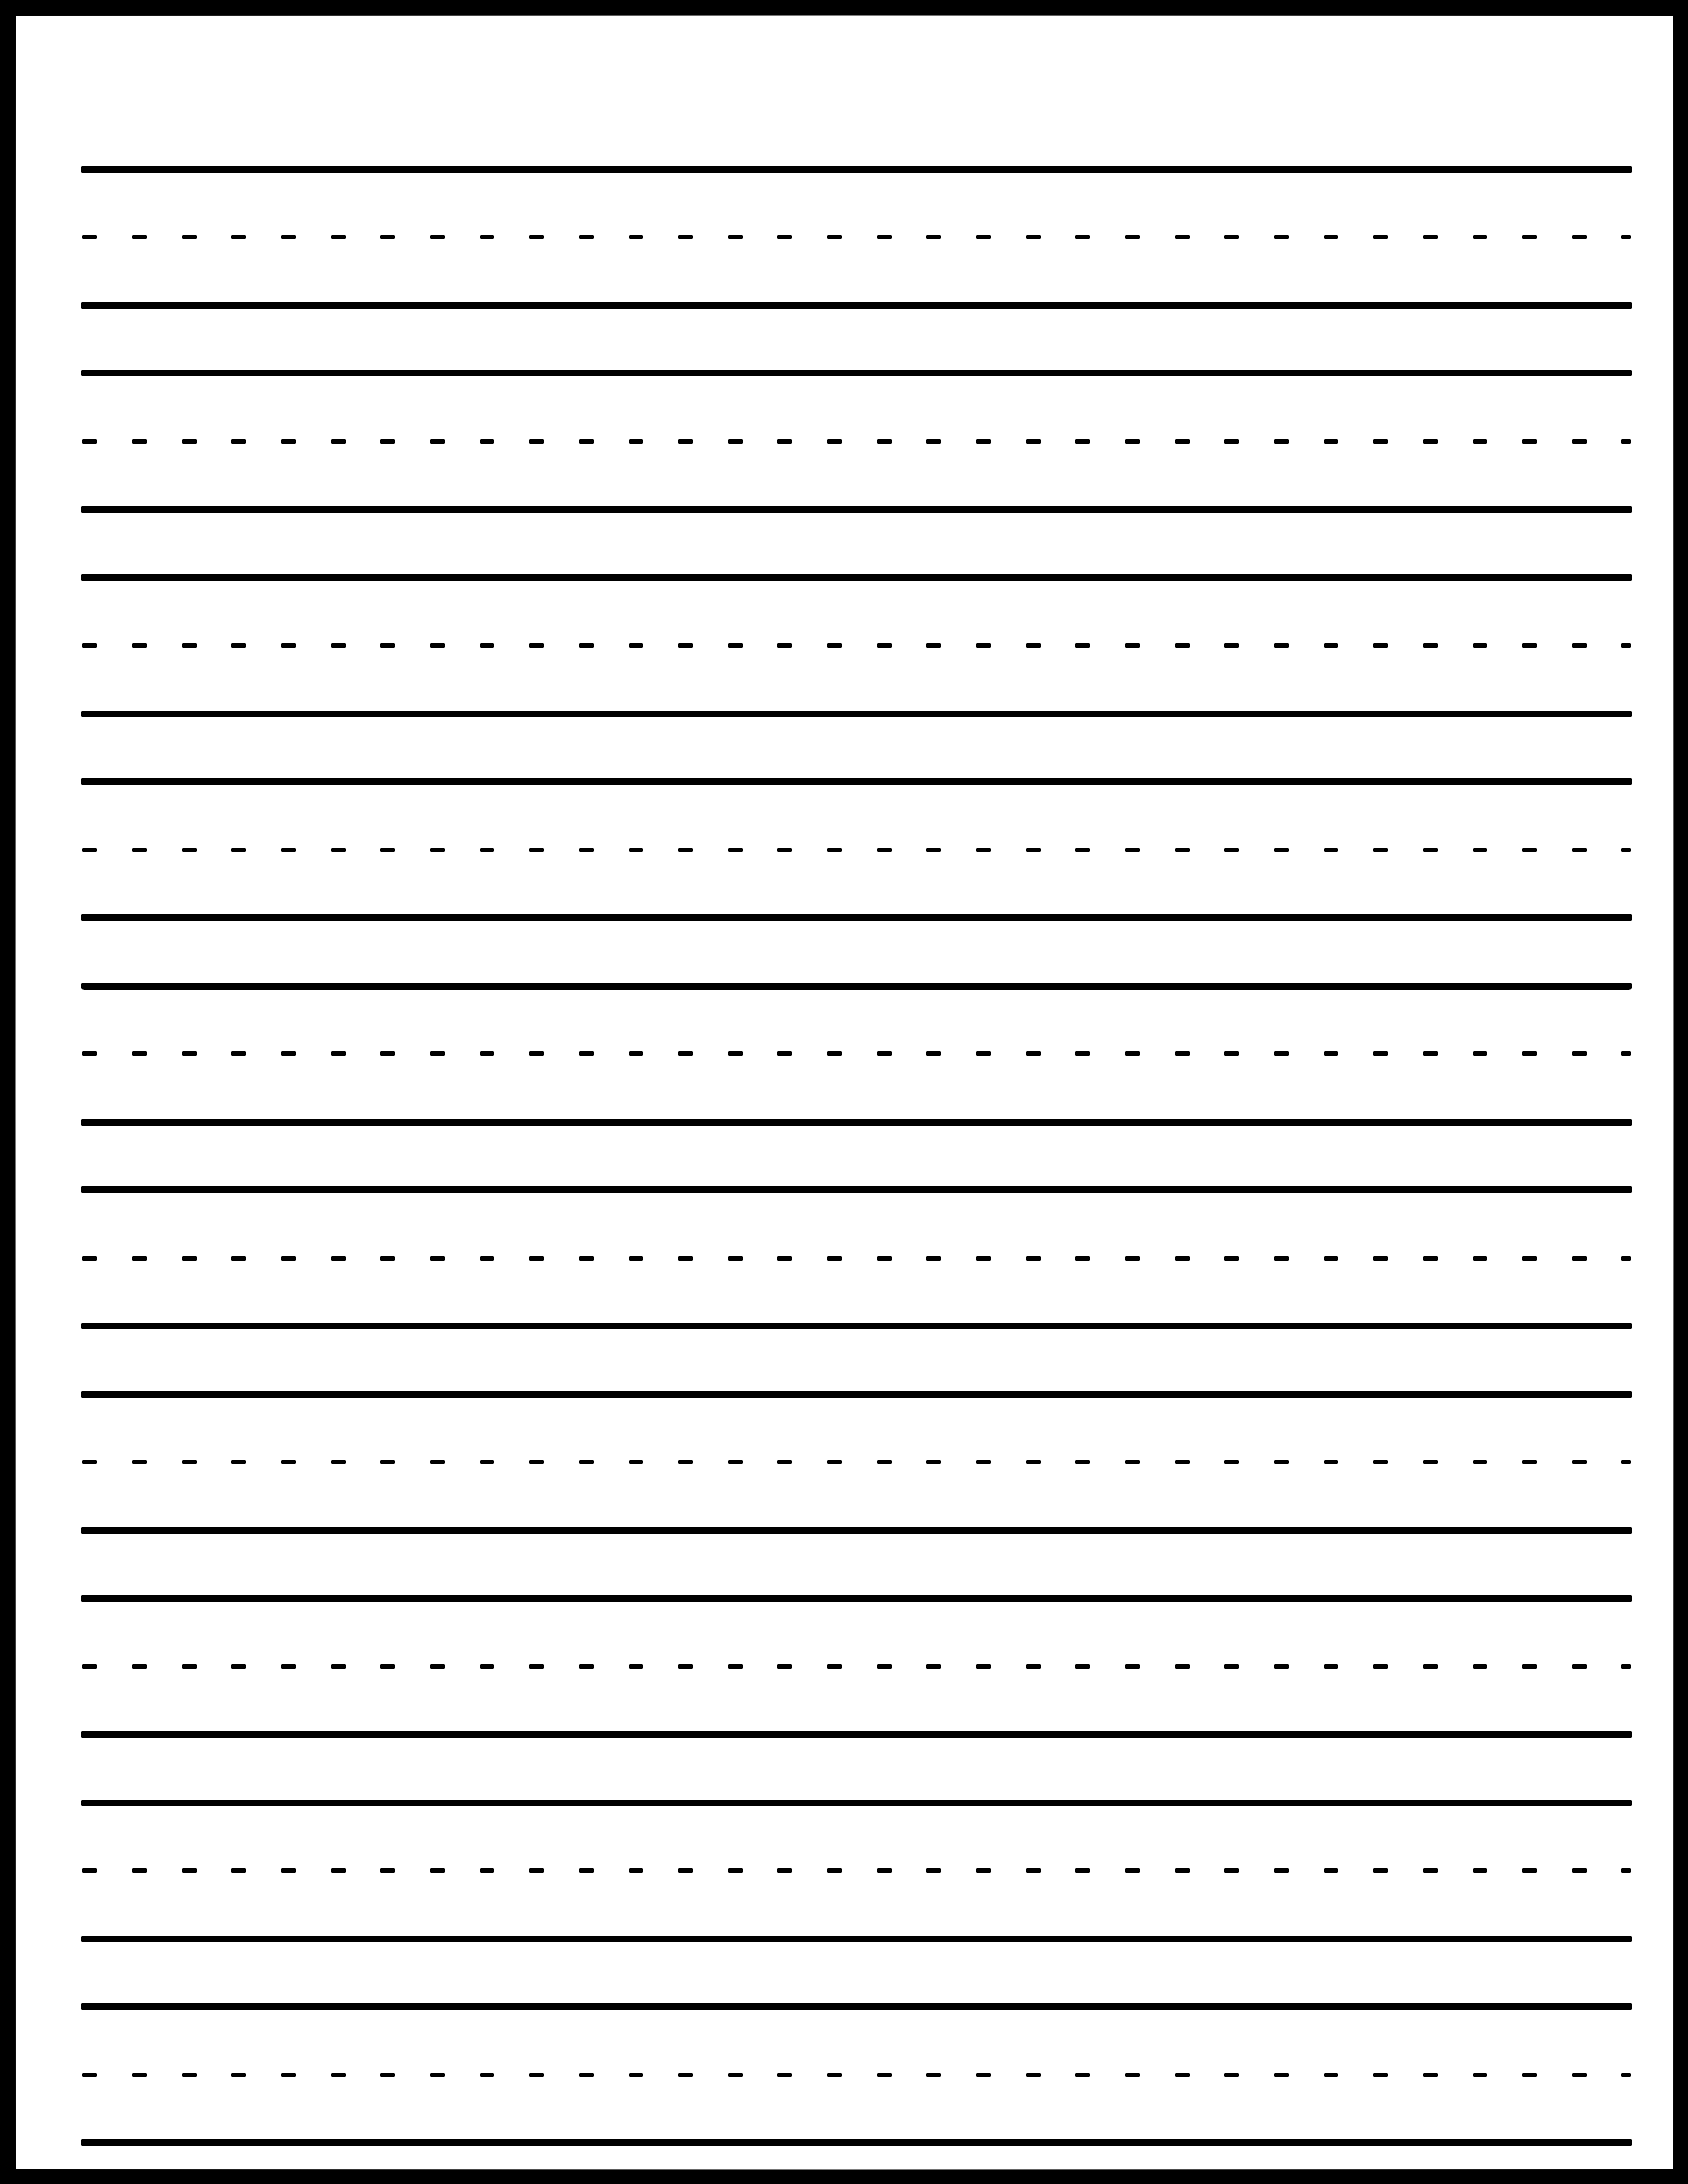 download-kindergarten-handwriting-practice-paper-with-dotted-lines